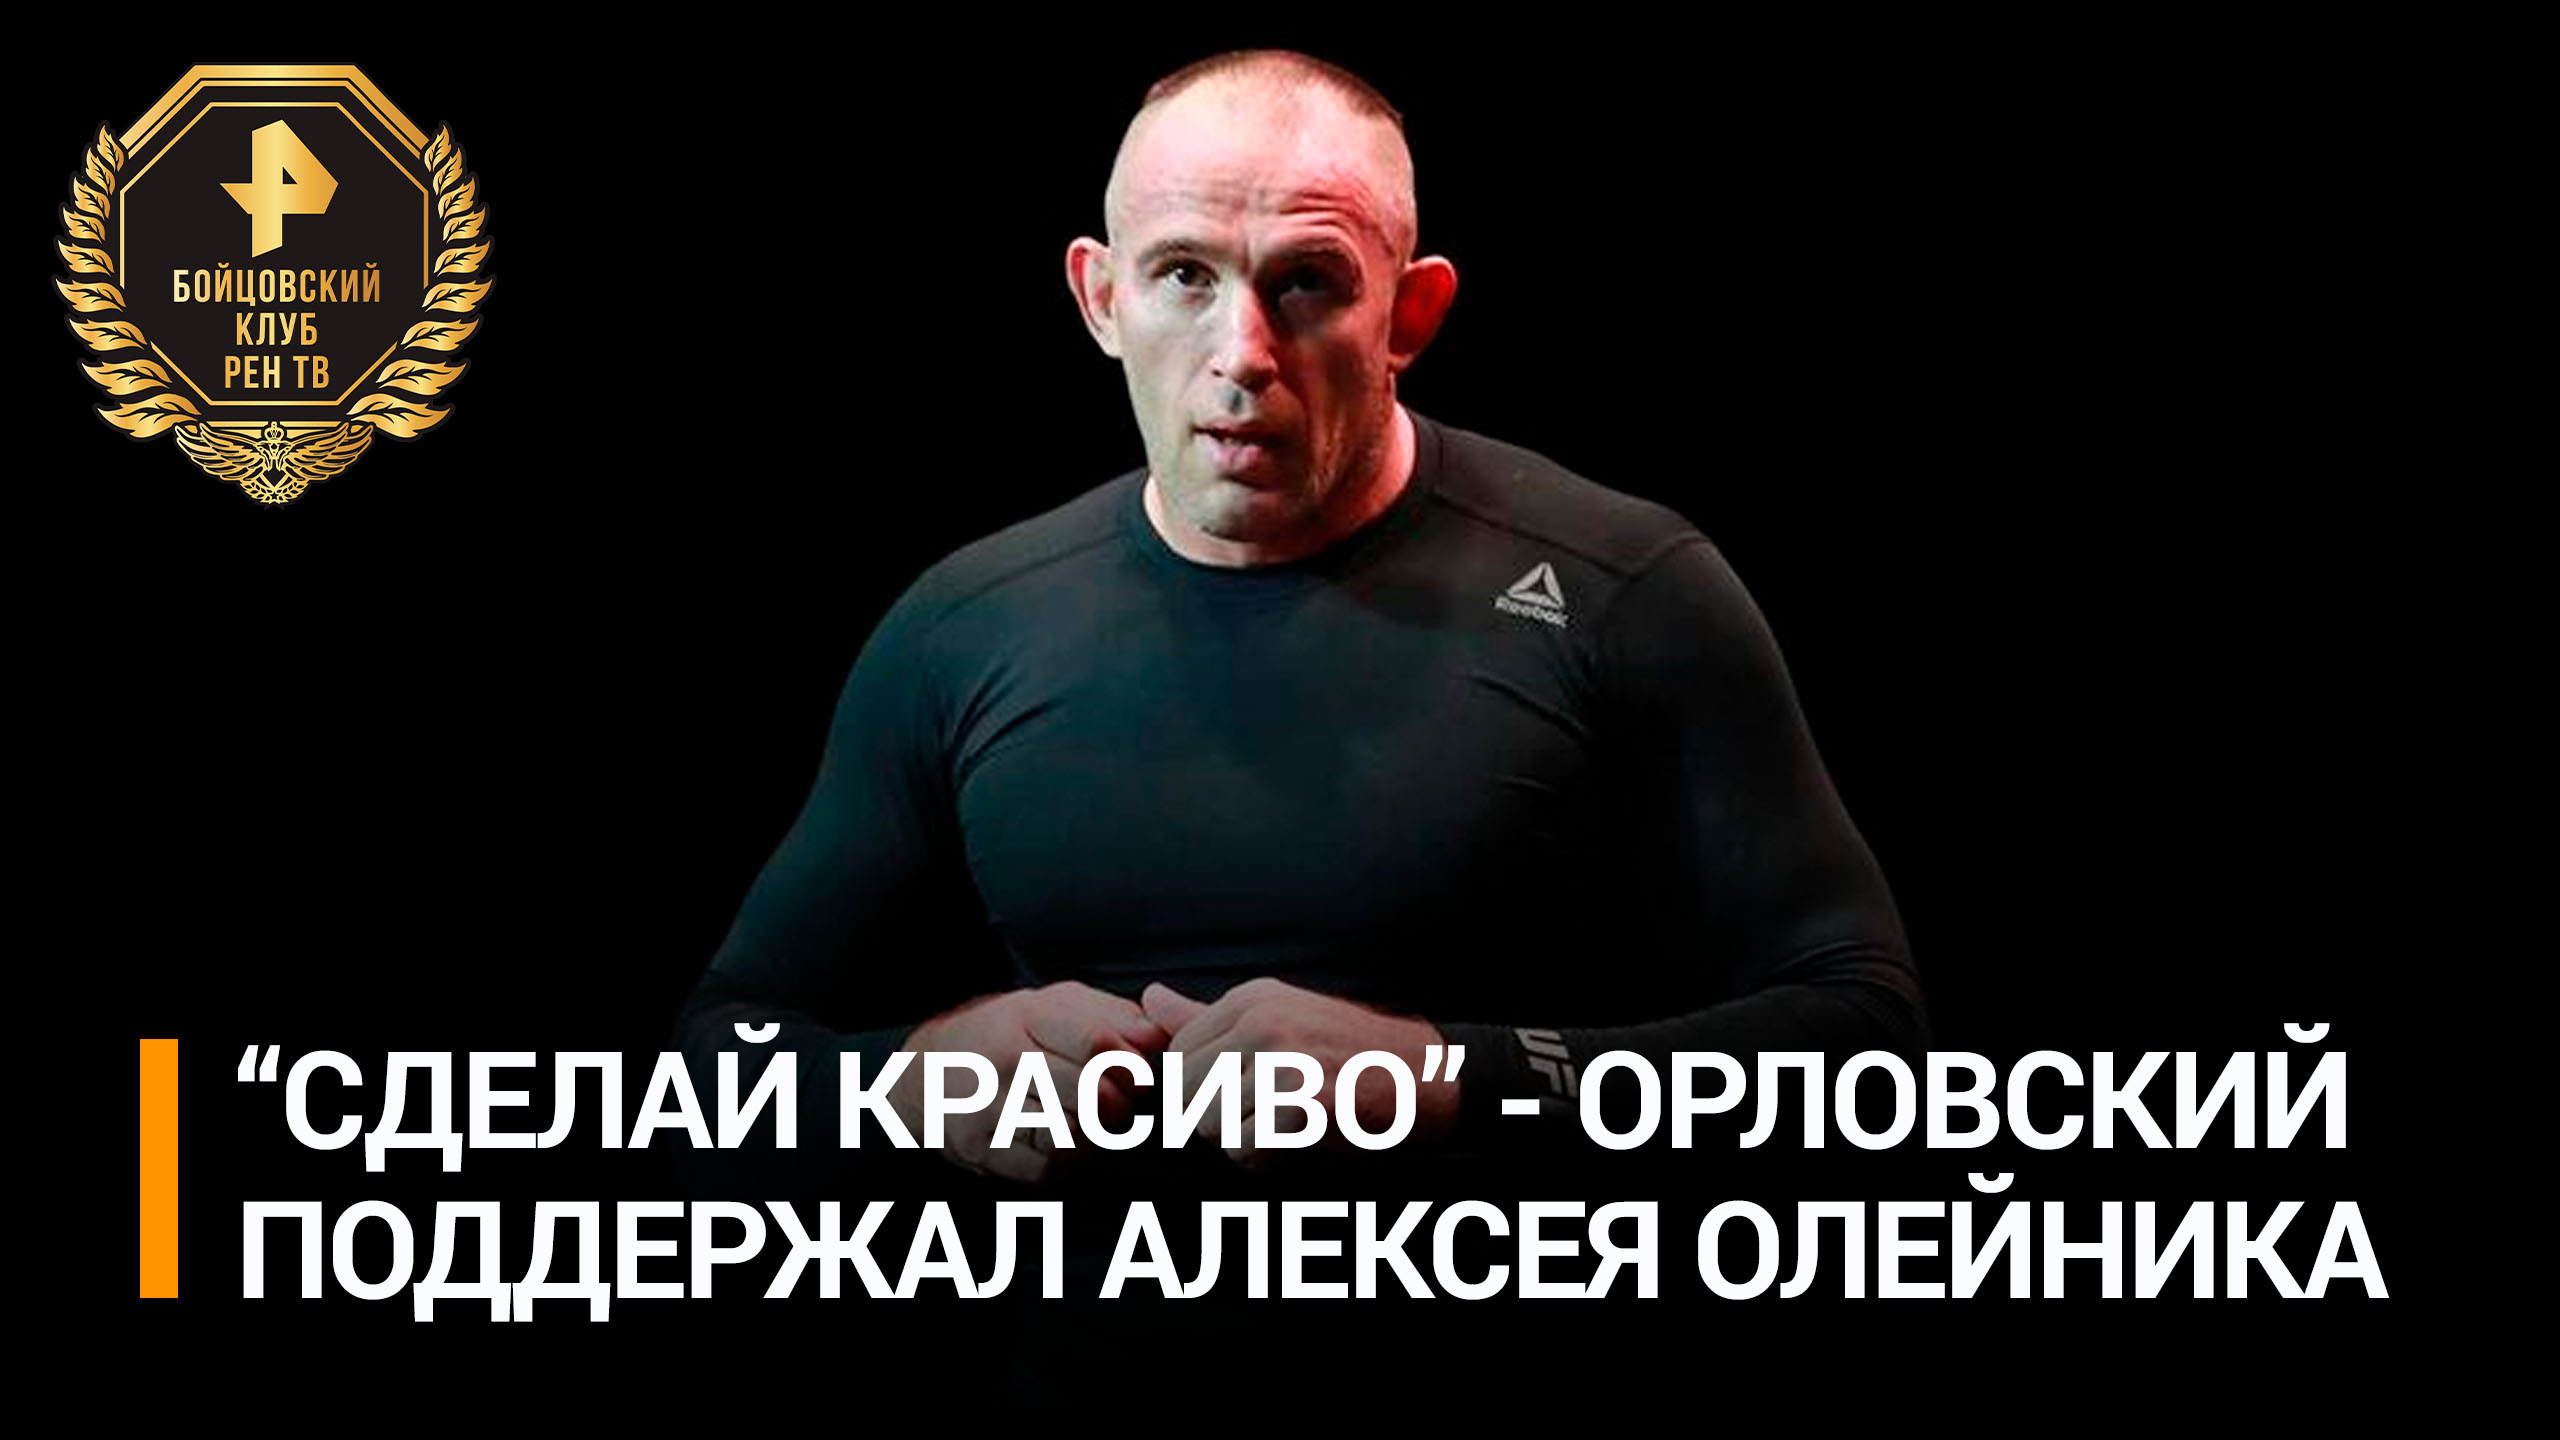 Экс-чемпион UFC Орловский поддержал Олейника перед боем с Томпсоном / РЕН Новости